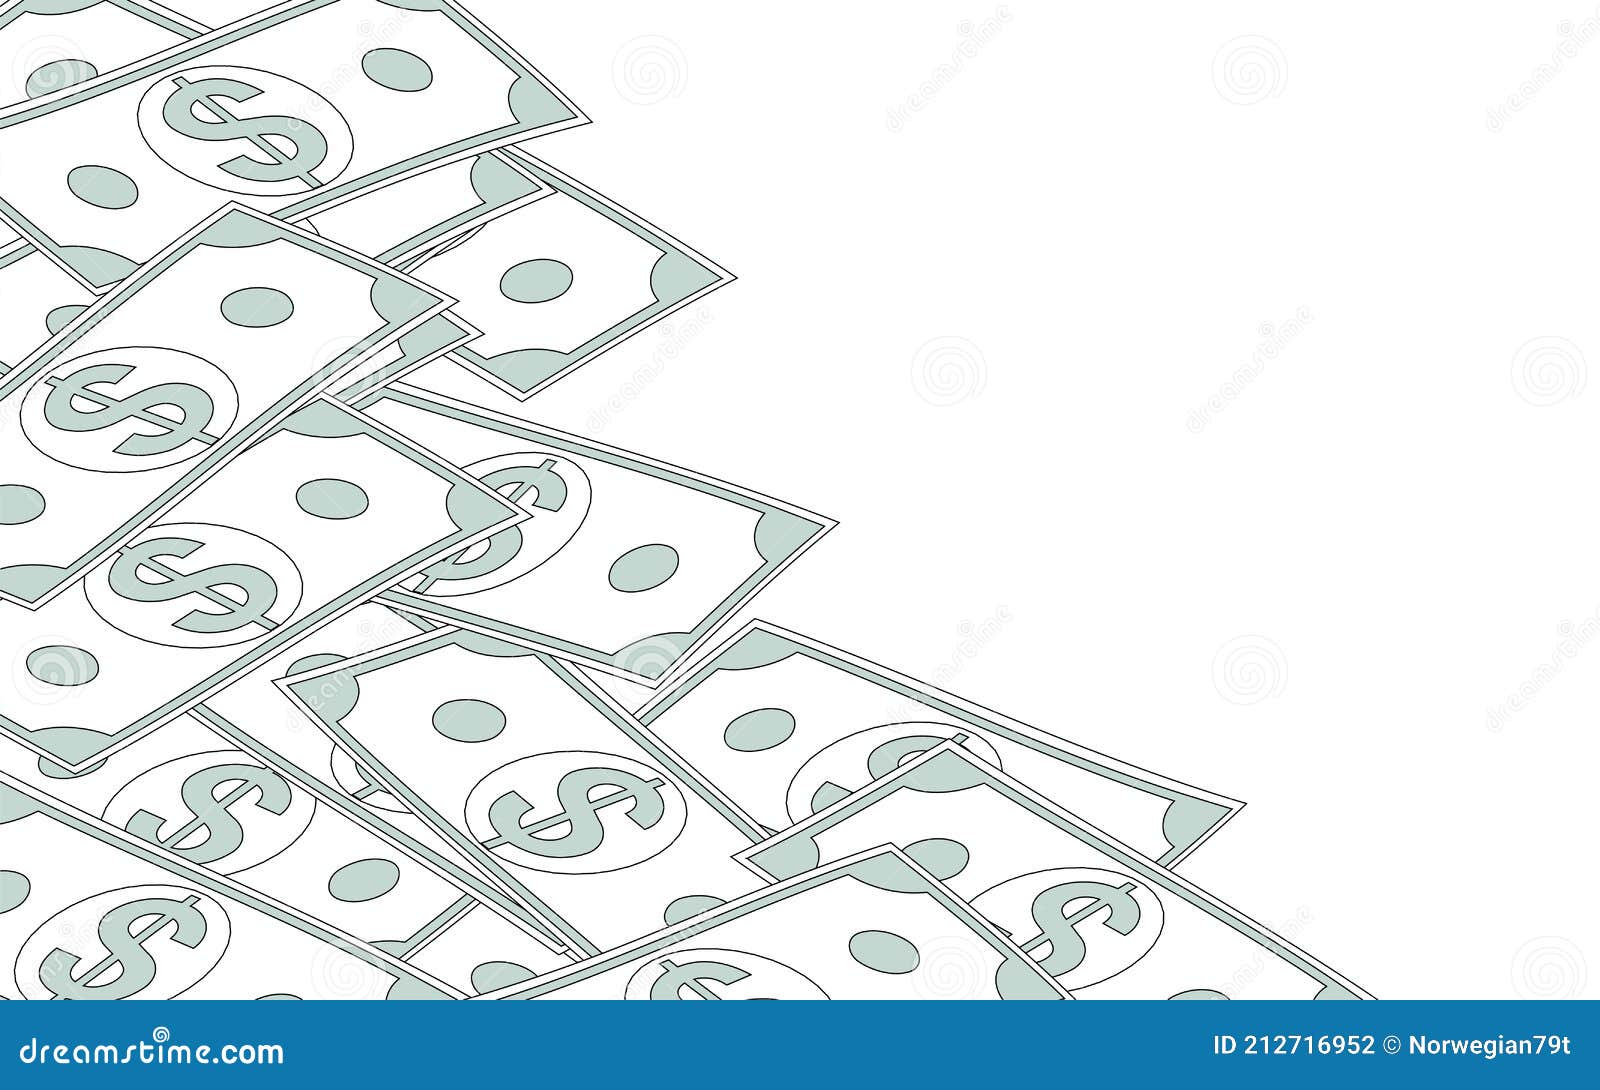 シンプルな線画のドル紙幣 背景素材 コピースペース付き Stock Illustration Illustration Of Inheritance Deposits